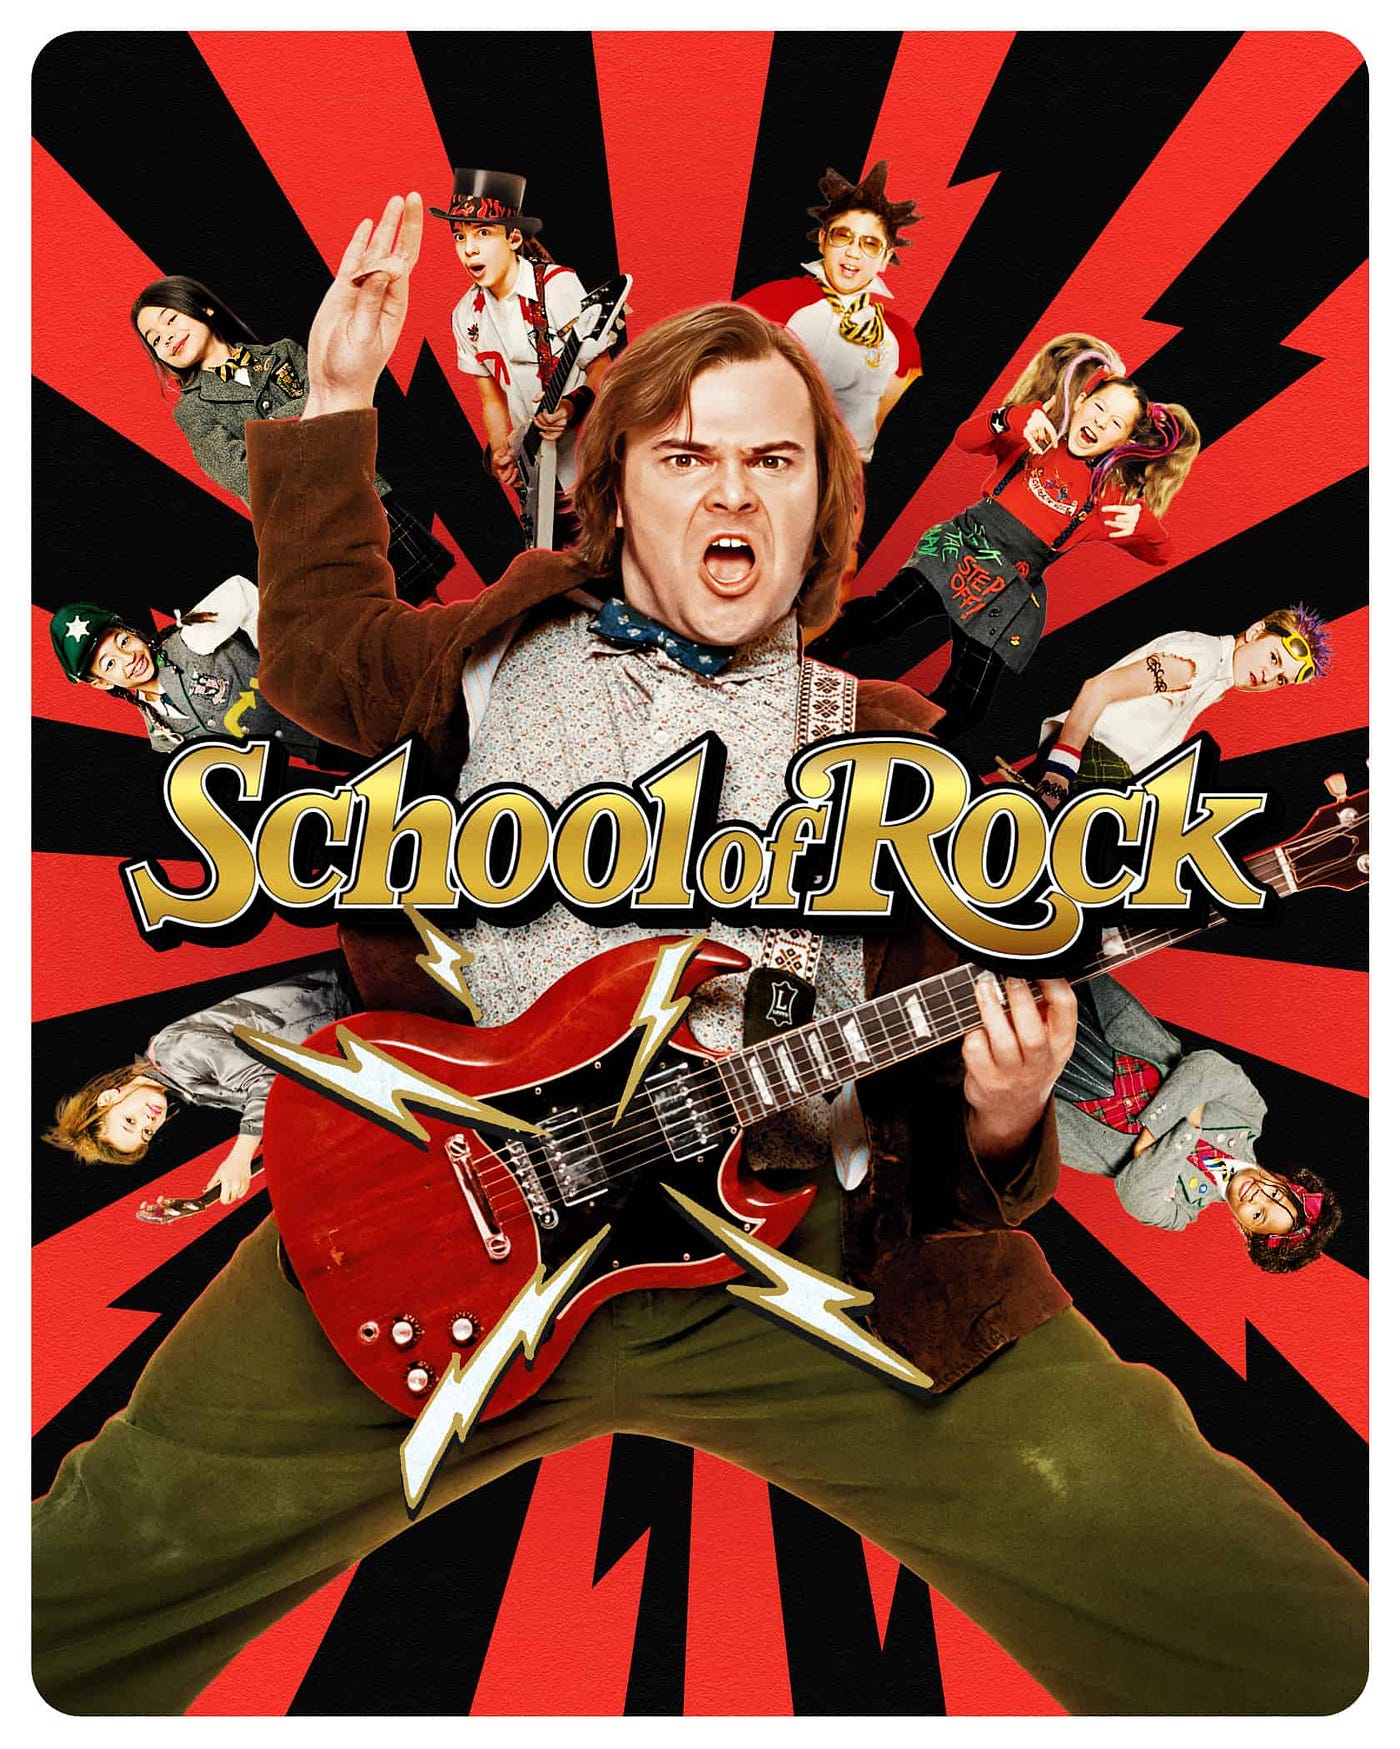 Rock On! or Jack Black in School of Rock by JJAtkins on DeviantArt